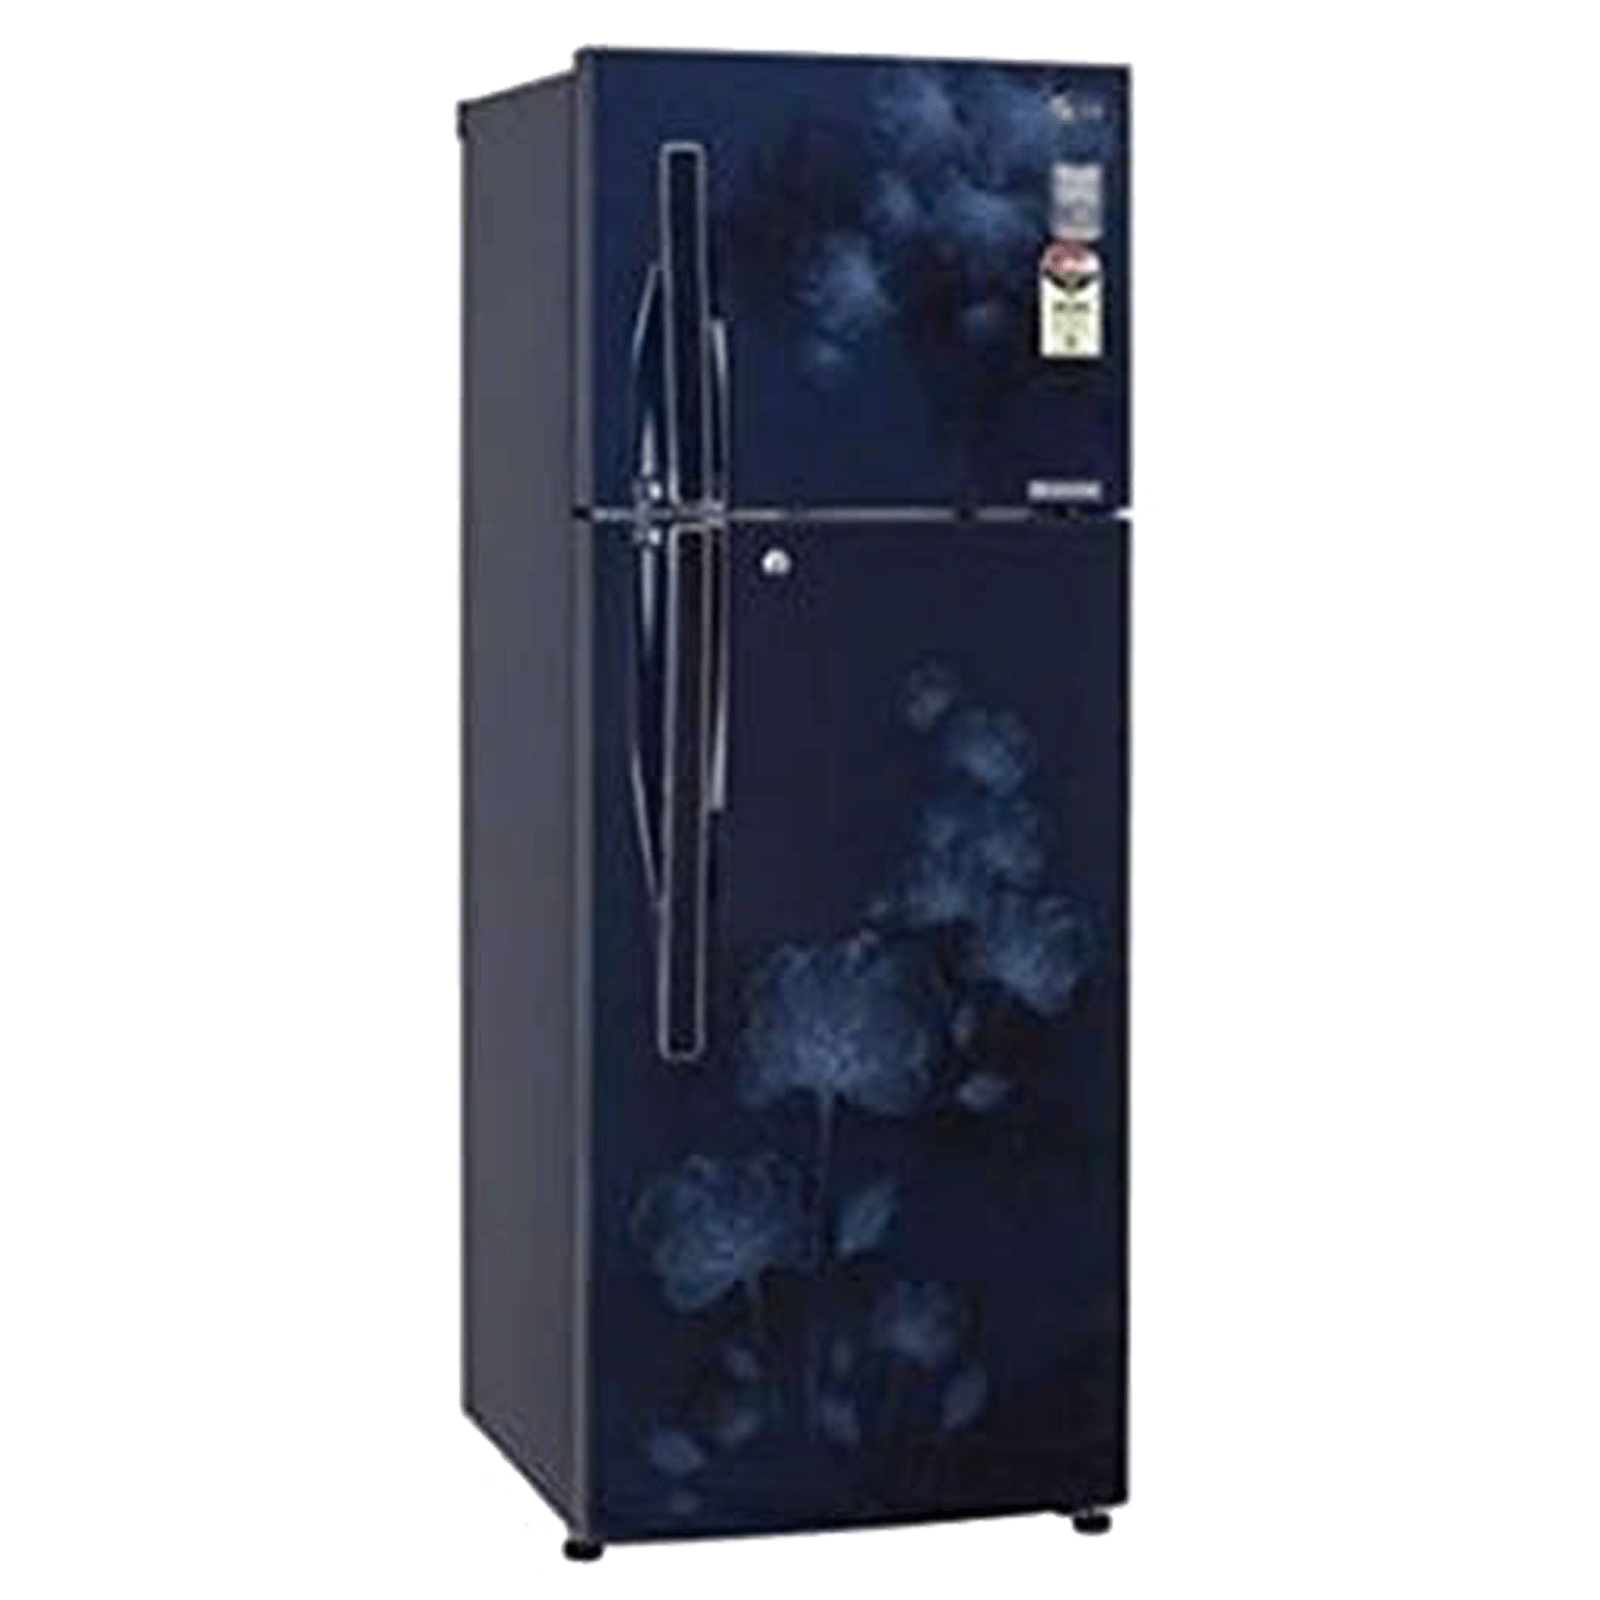 Godrej - Godrej RT EON 275B 25 HI 260 Litres 2 Star Frost Free Inverter Compressor Double Door Refrigerator (Rust Resistant, 52141501SD01868, Aqua Blue)